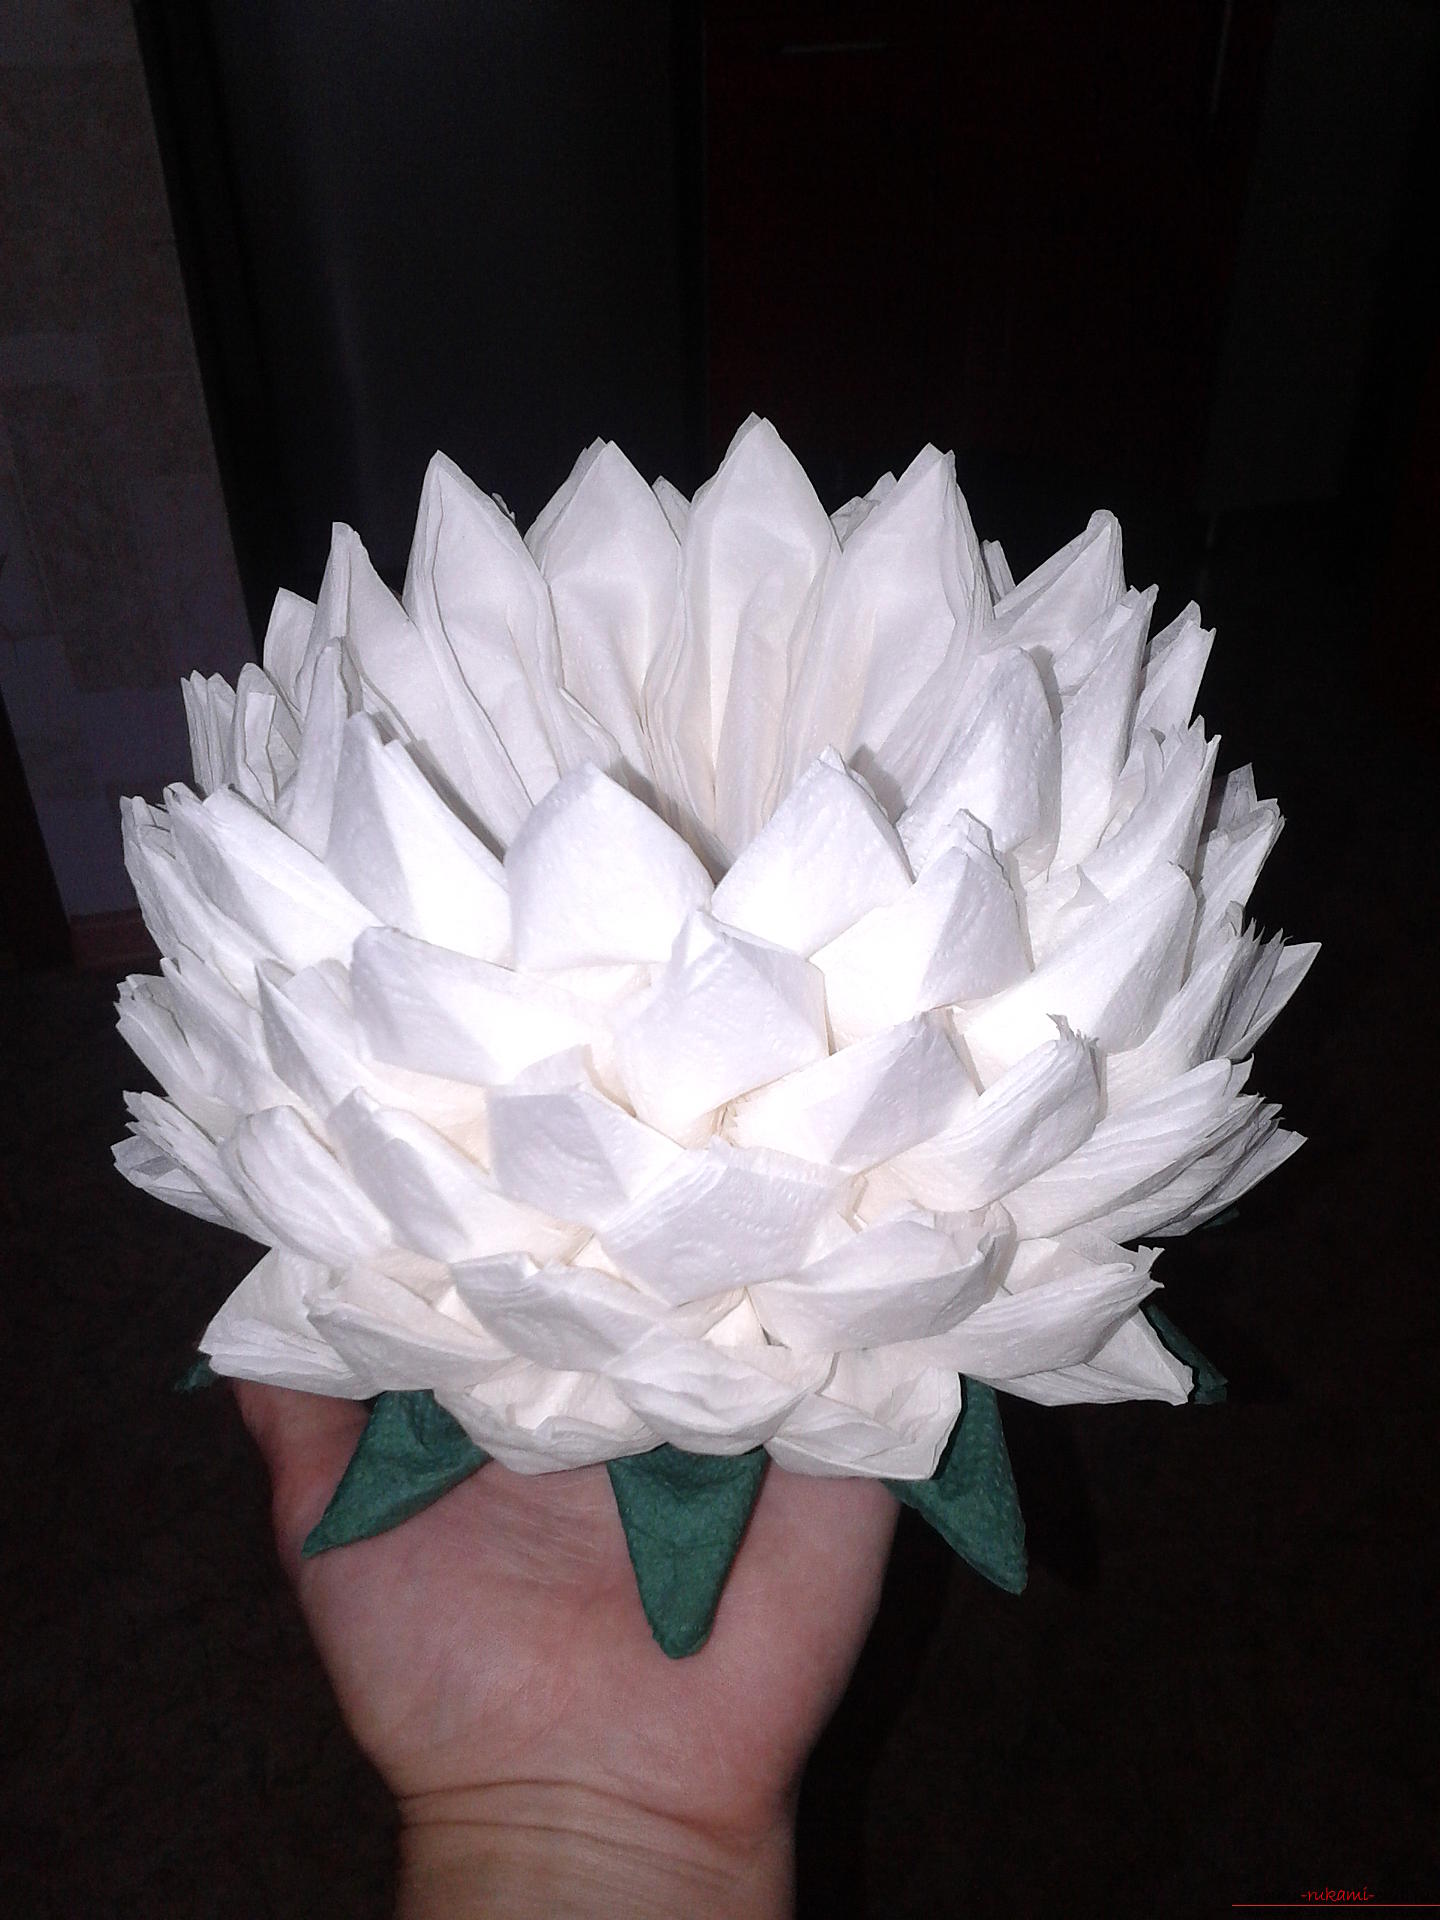 Удивительные поделки из салфеток могут сделать даже дети, цветок лотоса сделан из кухонных белых салфеток.. Фото №1